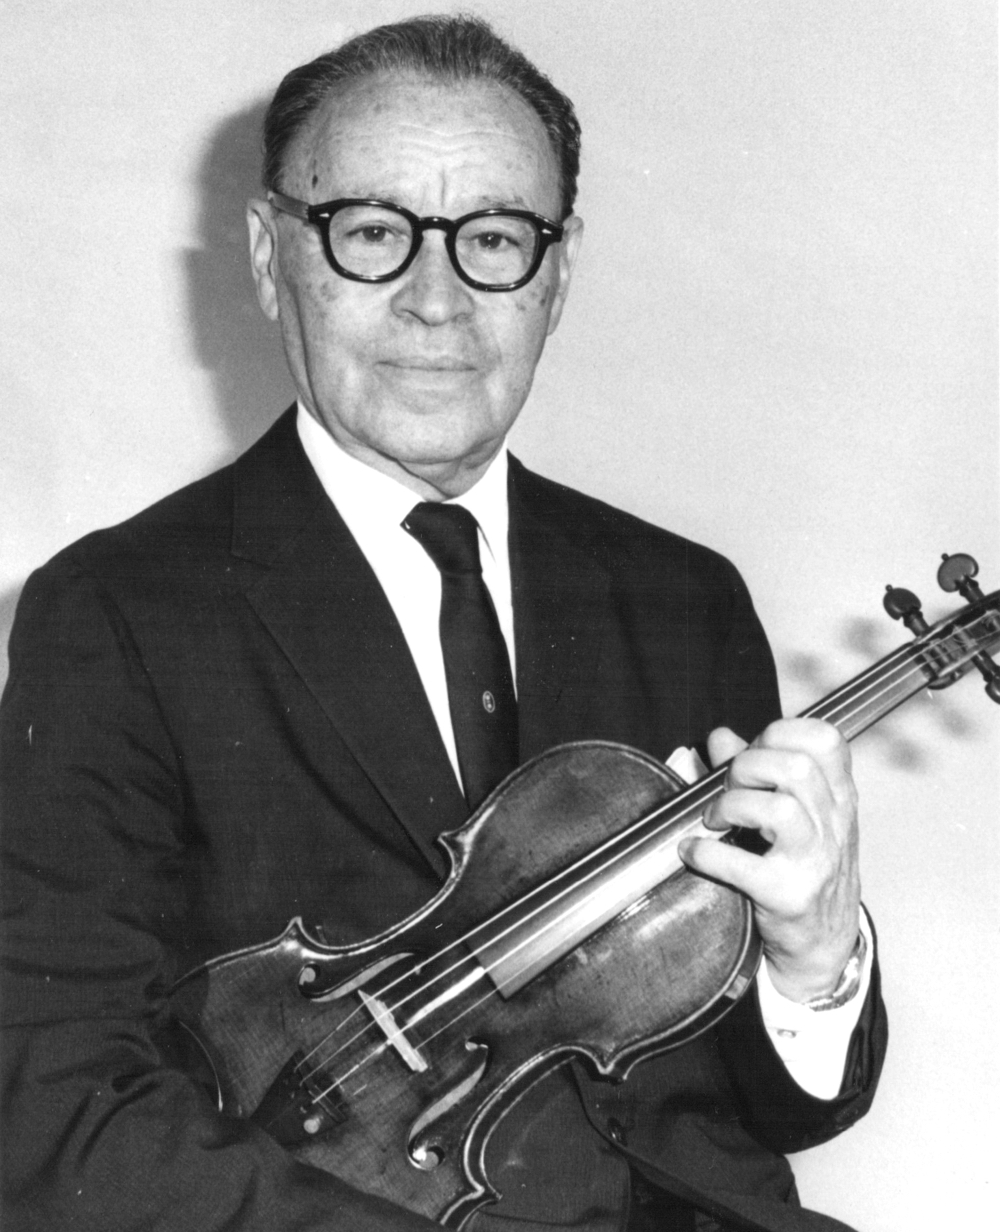 Michael Rosenker with the ‘Trombetta’ Carlo Bergonzi in c. 1964. Photo courtesy Misha Rosenker